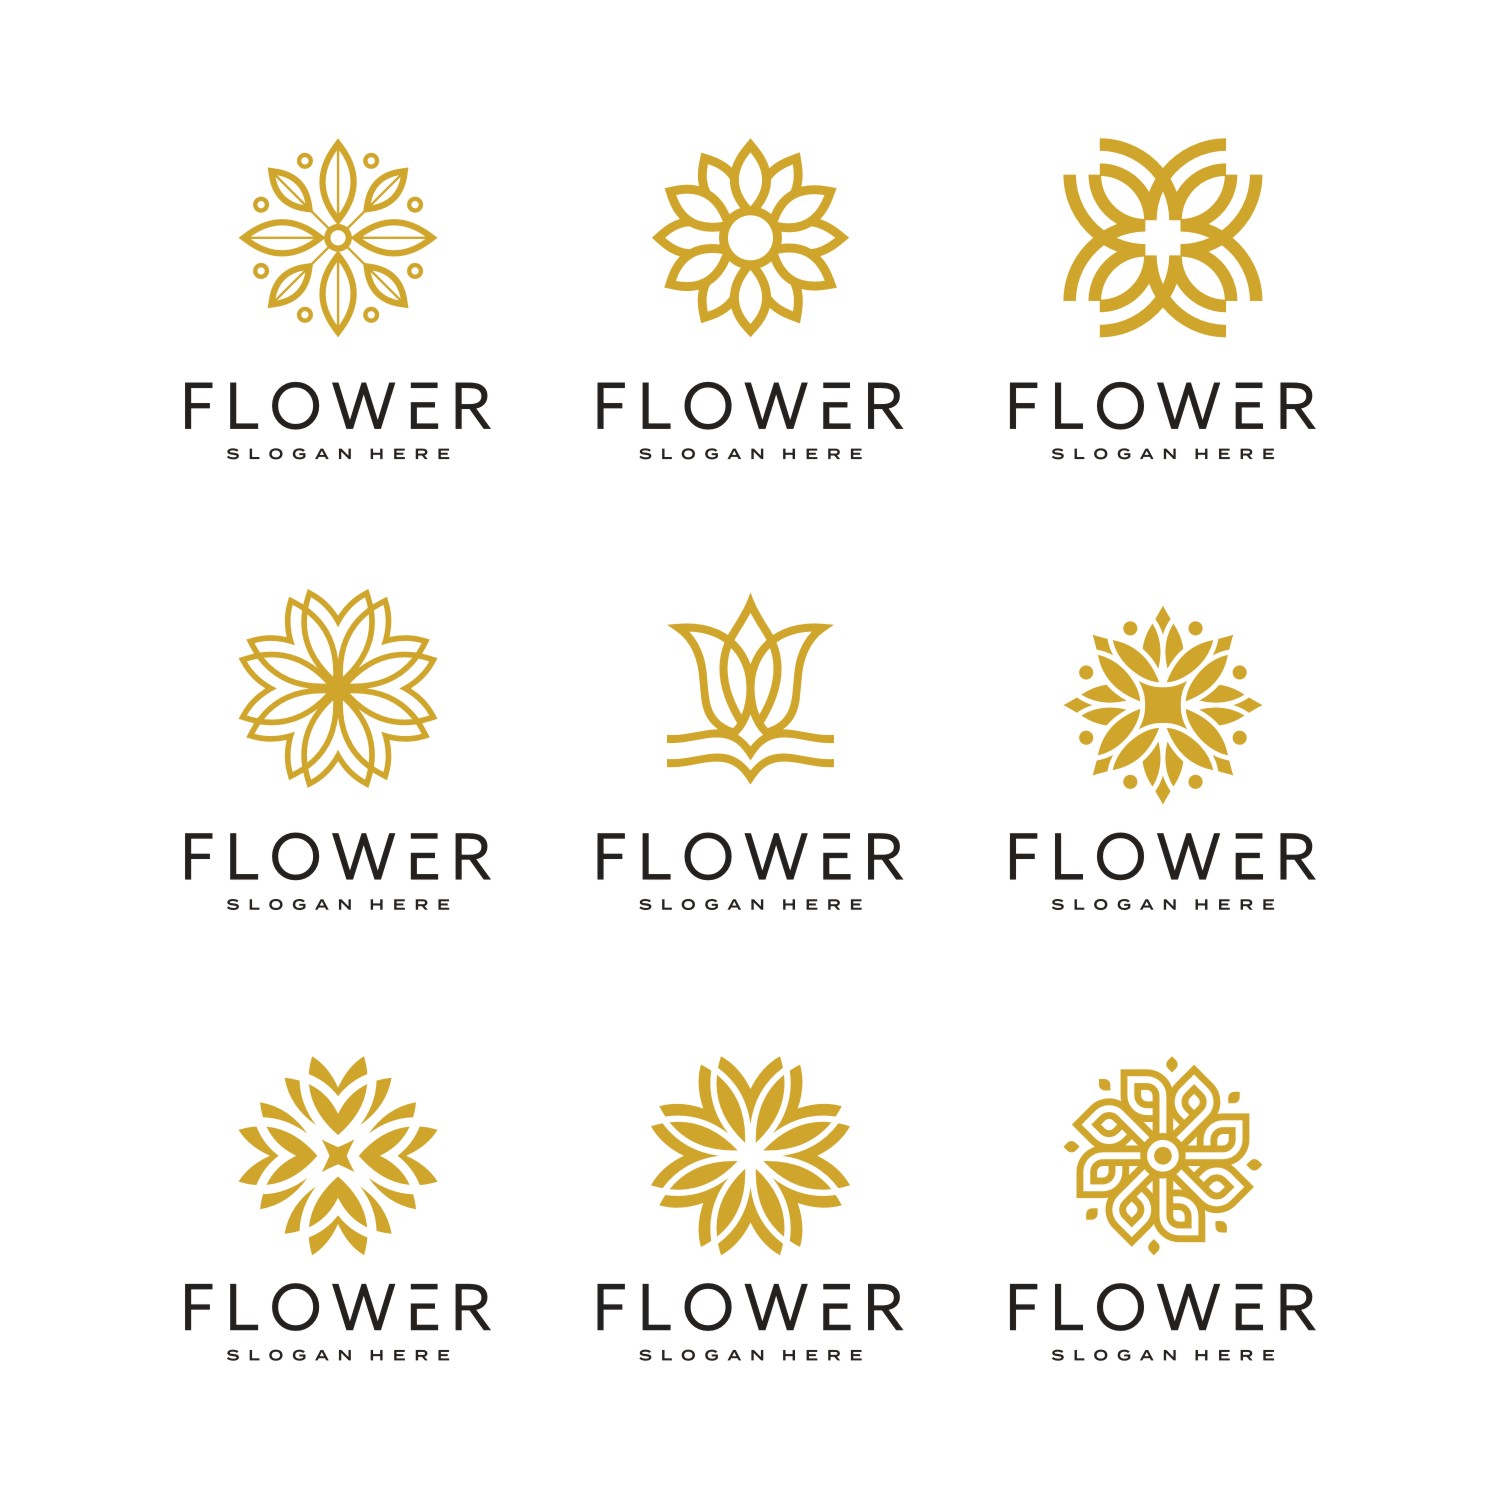 Flower Logo Vector Design cover image.